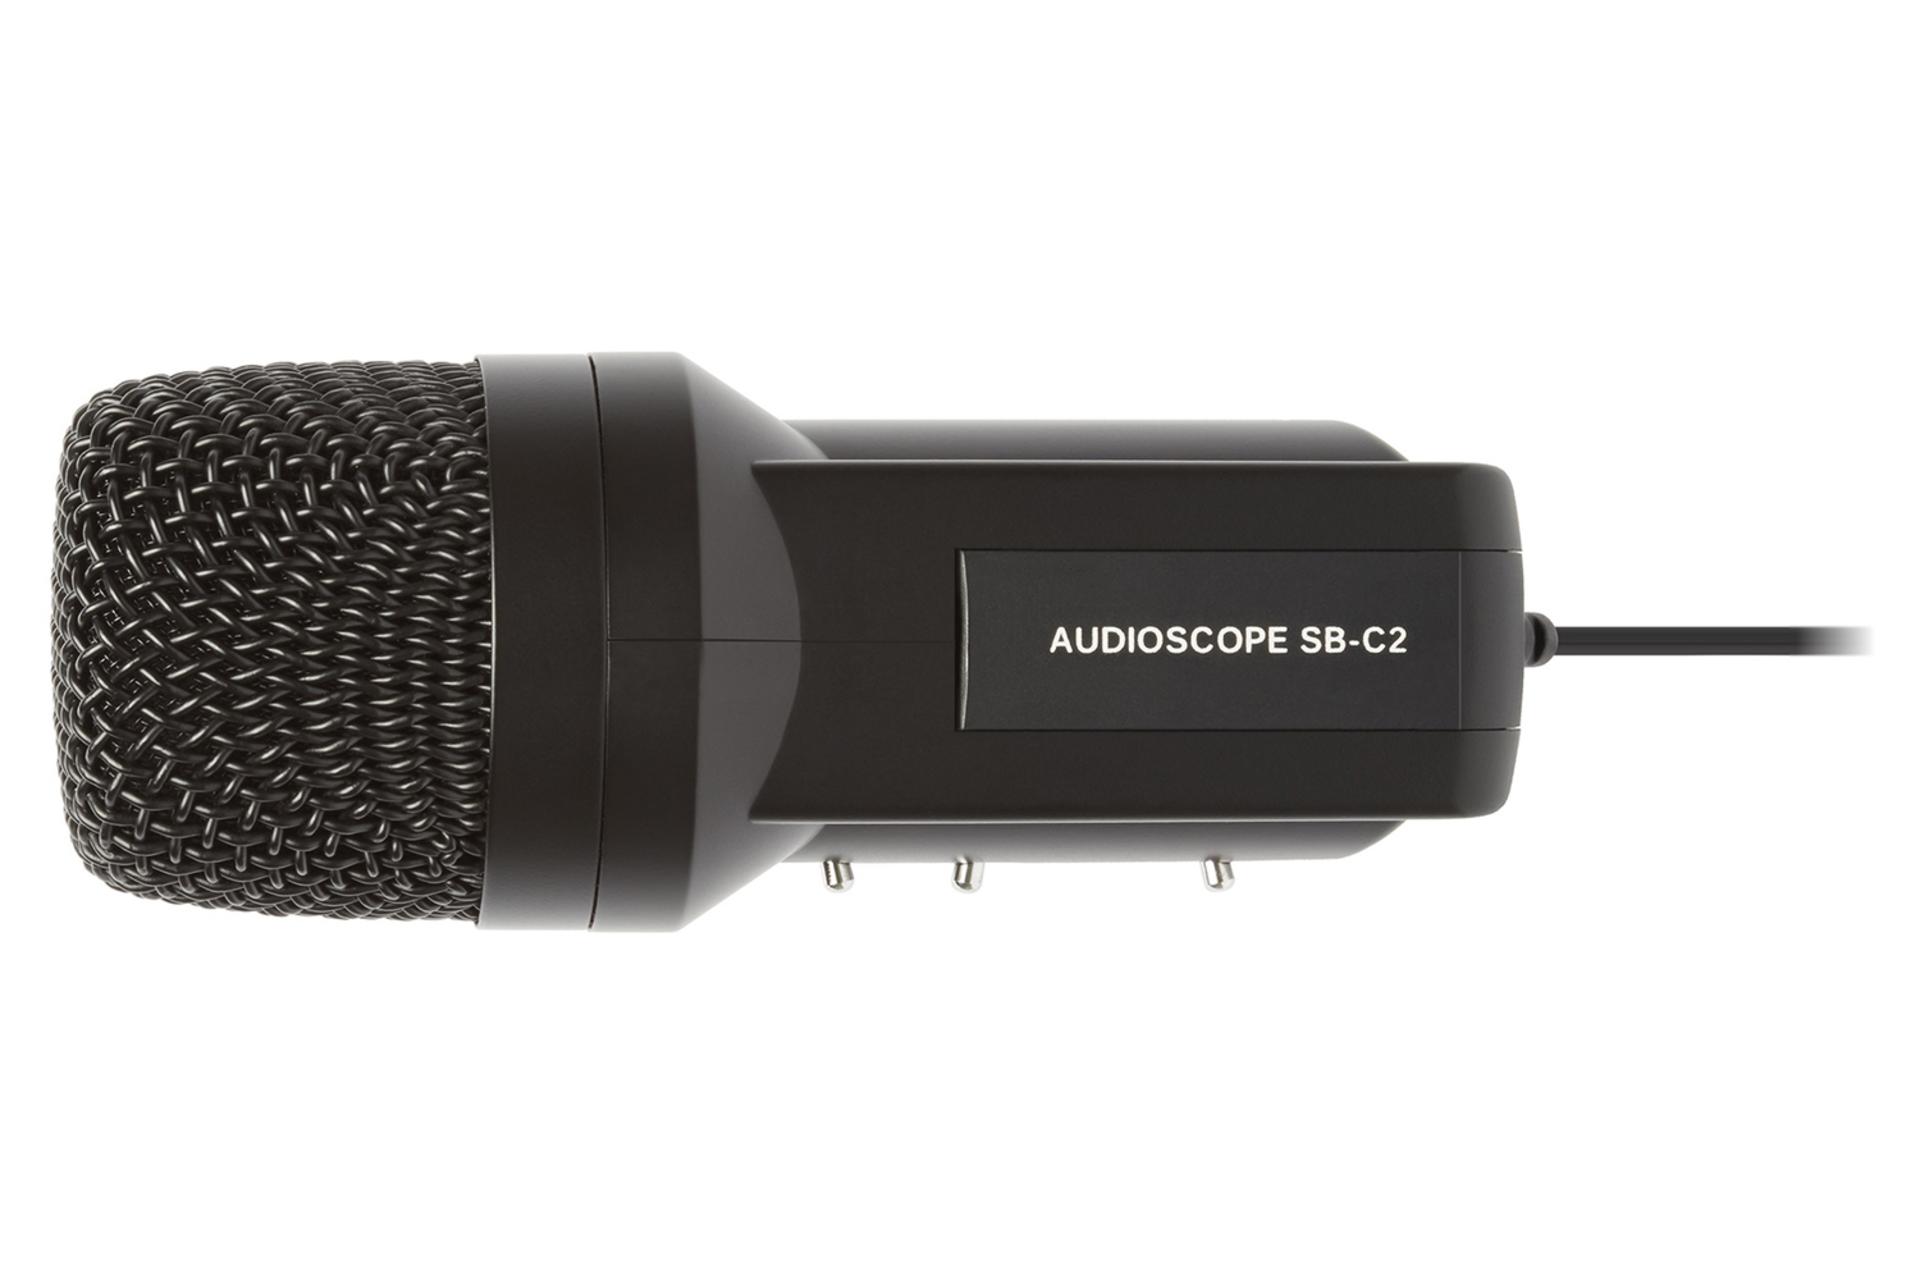 میکروفون مارانتز پرو Marantz Pro Audio Scope SB-C2 نمای بالا